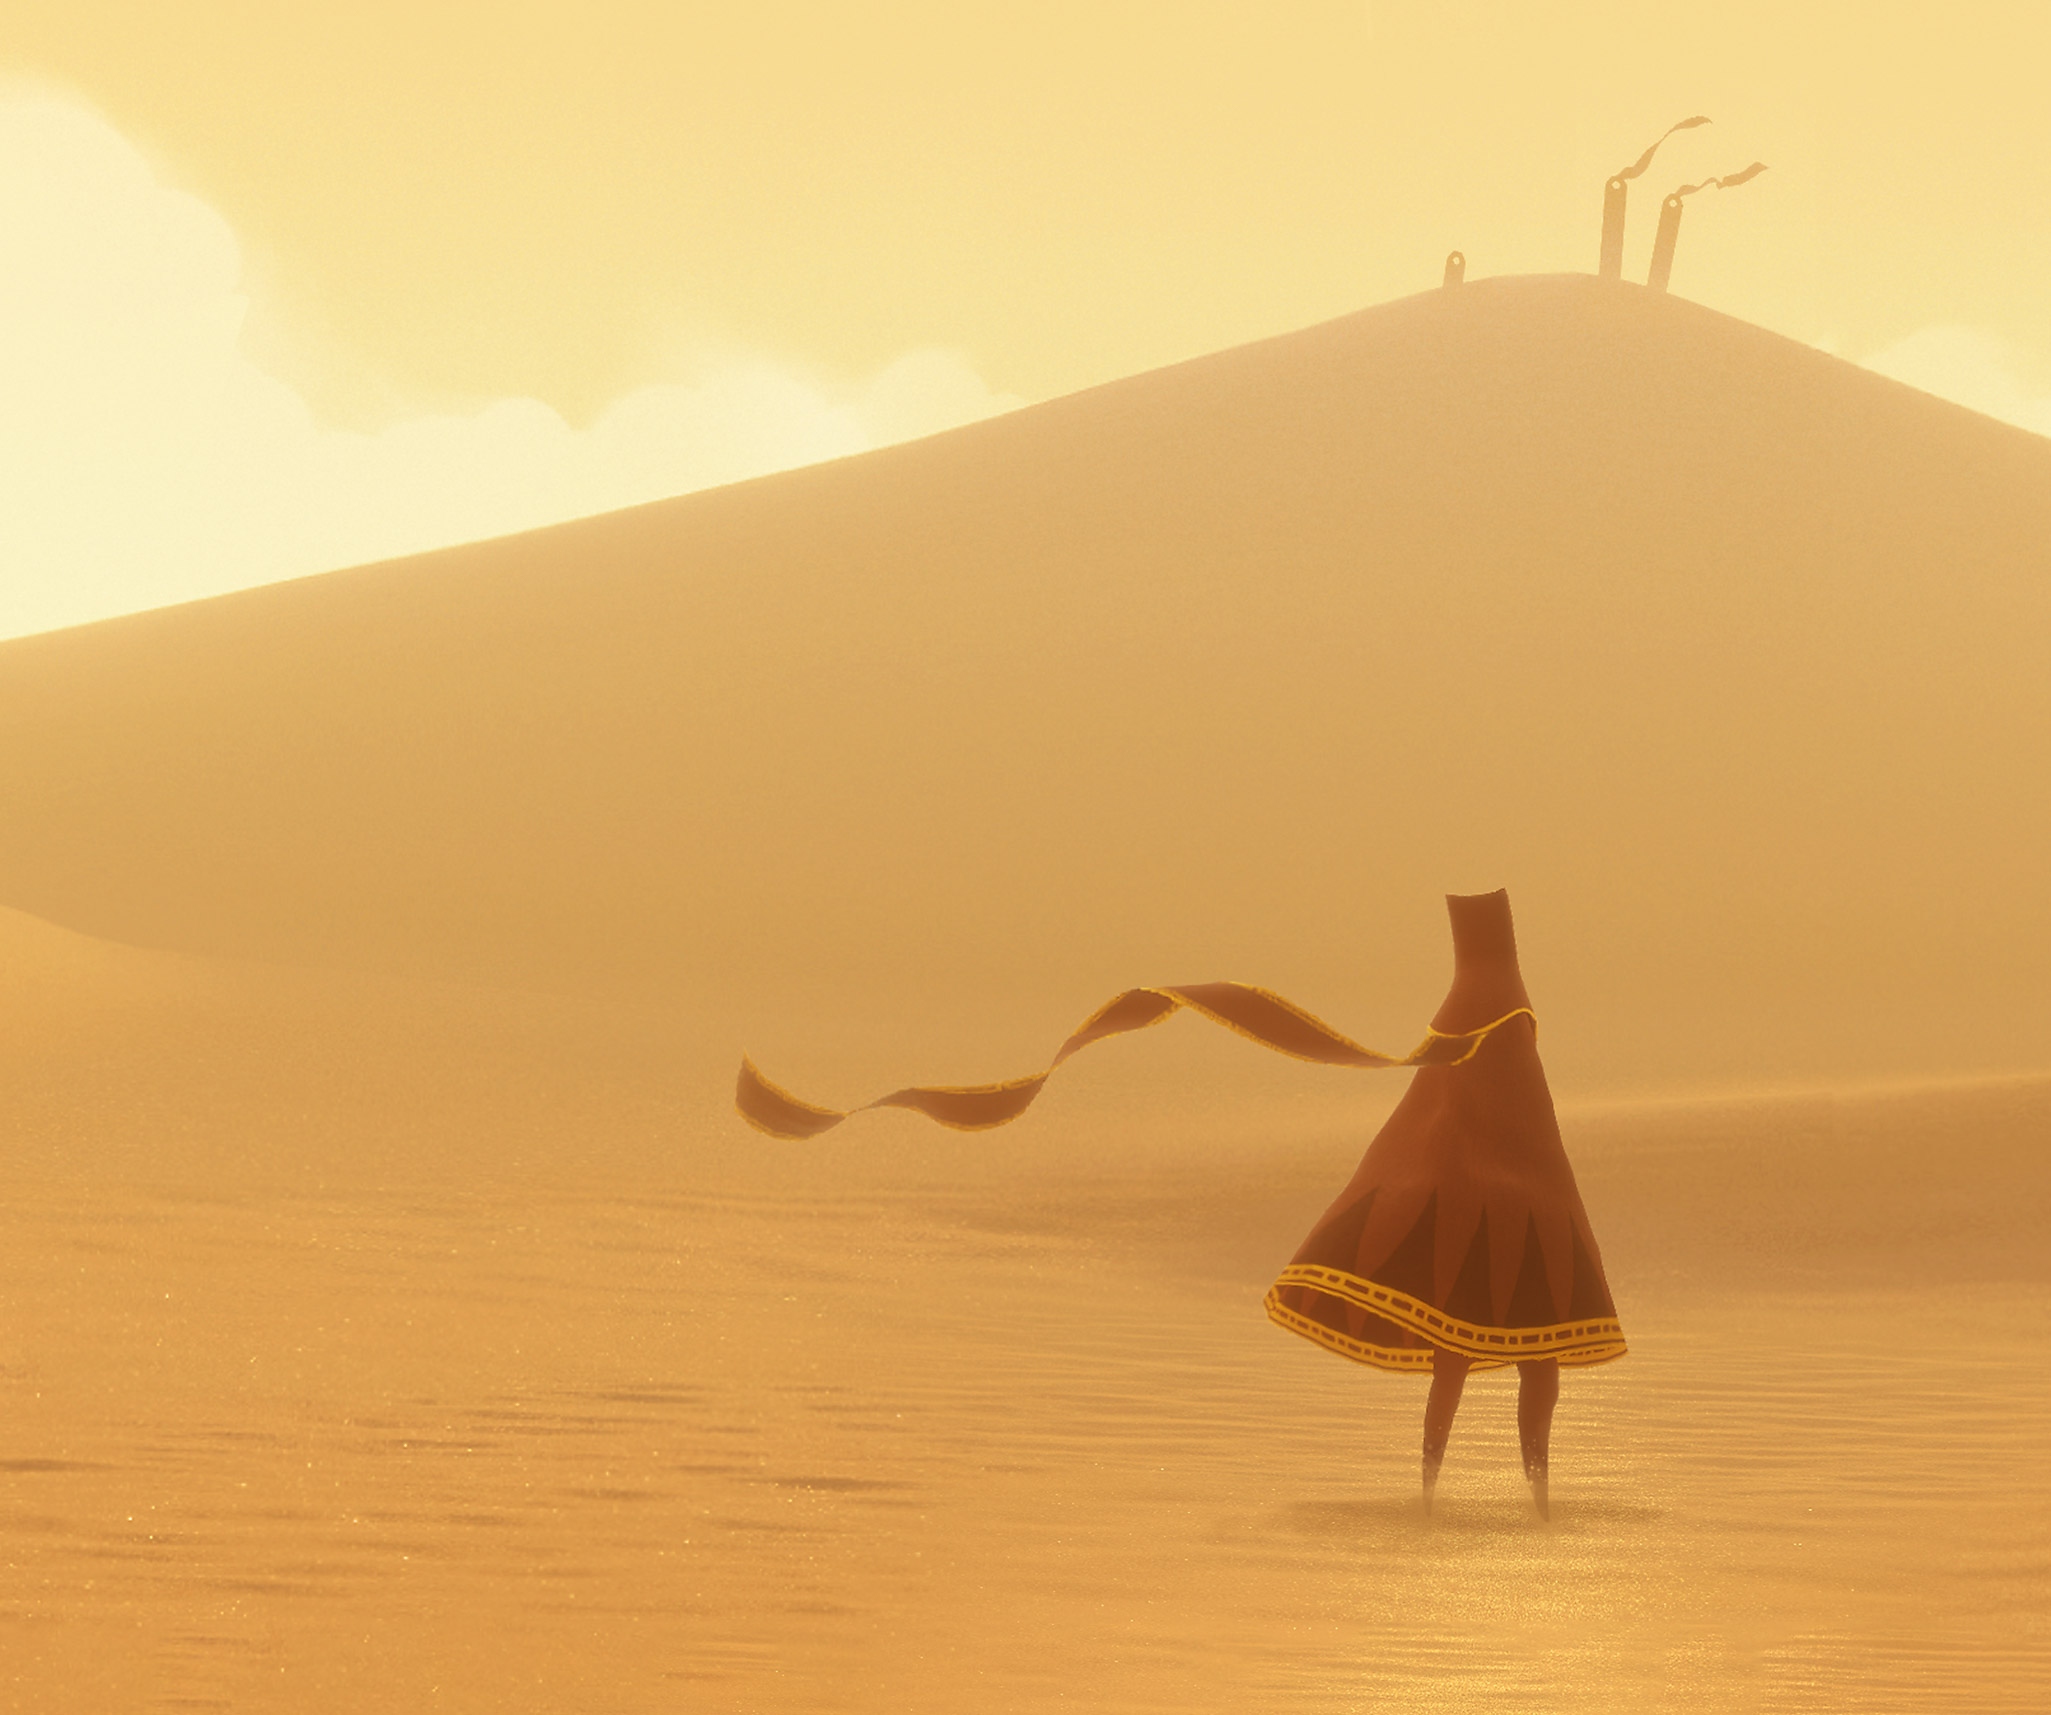 A Journey fő grafikáján a főszereplő, „Az utazó” egy hatalmas, napsütötte sivatagban áll.